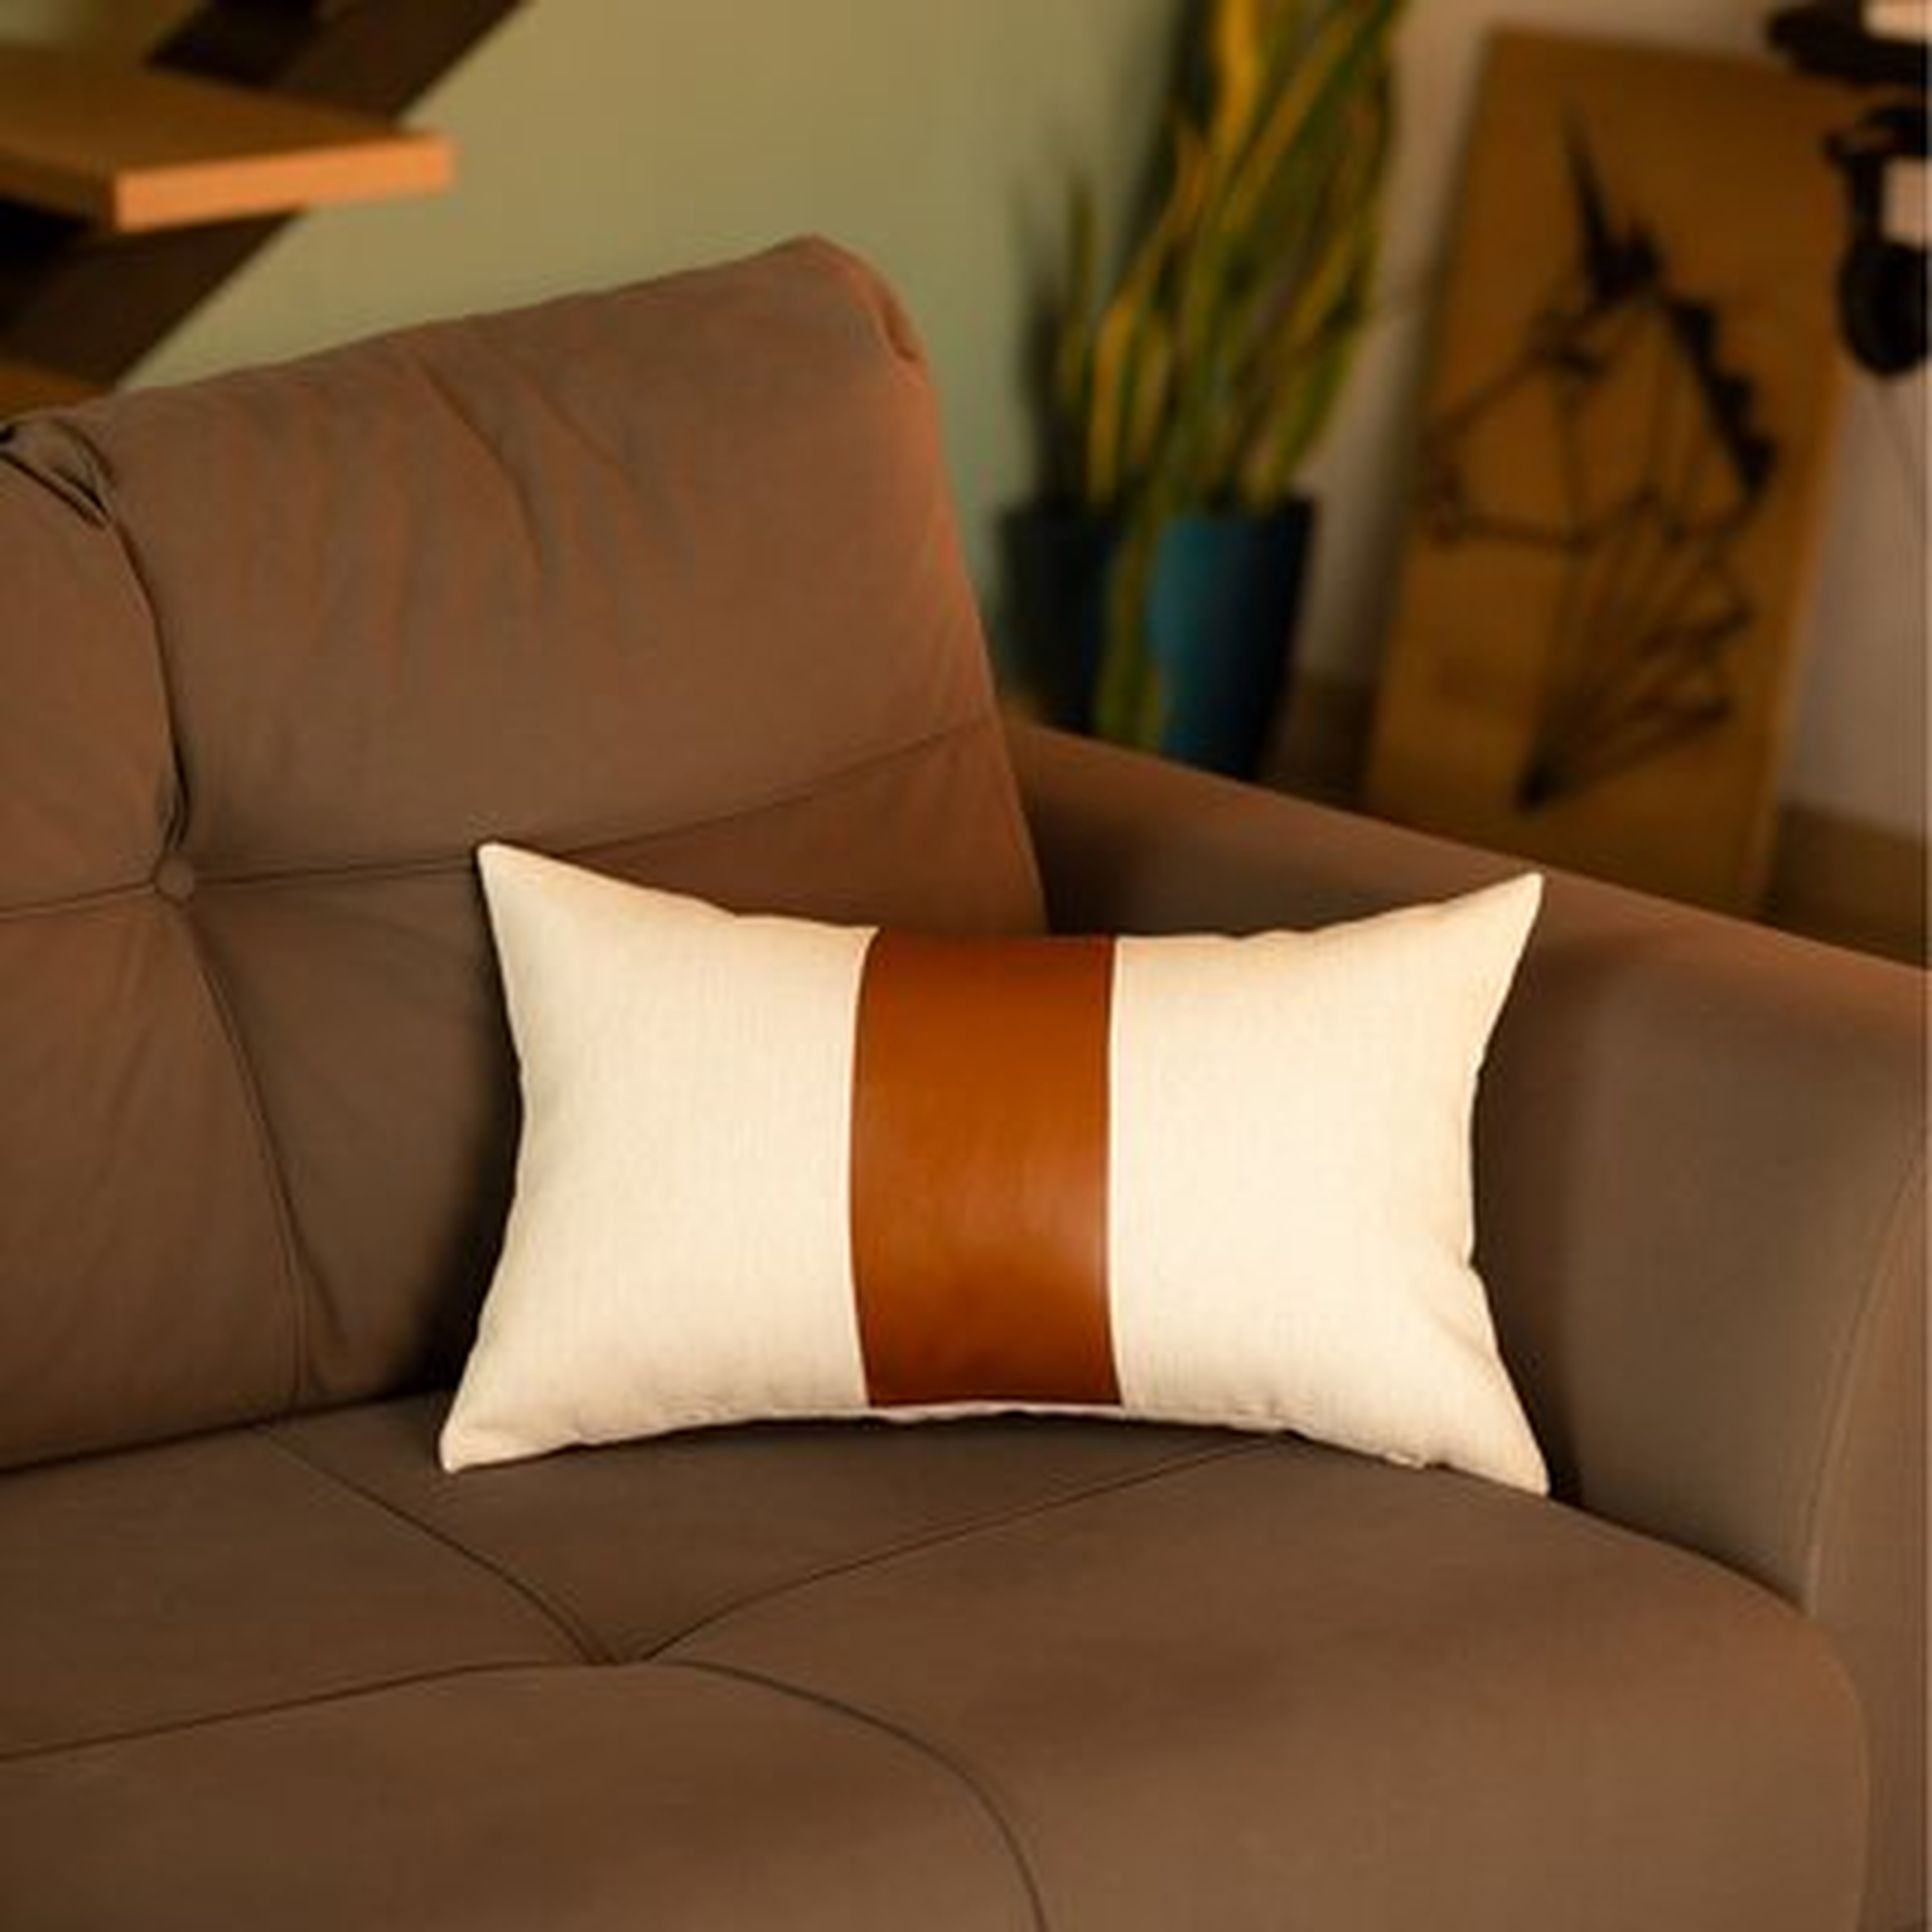 Alvarenga Rectangular Faux Leather Pillow Cover, Brown, 20" x 12" - Wayfair